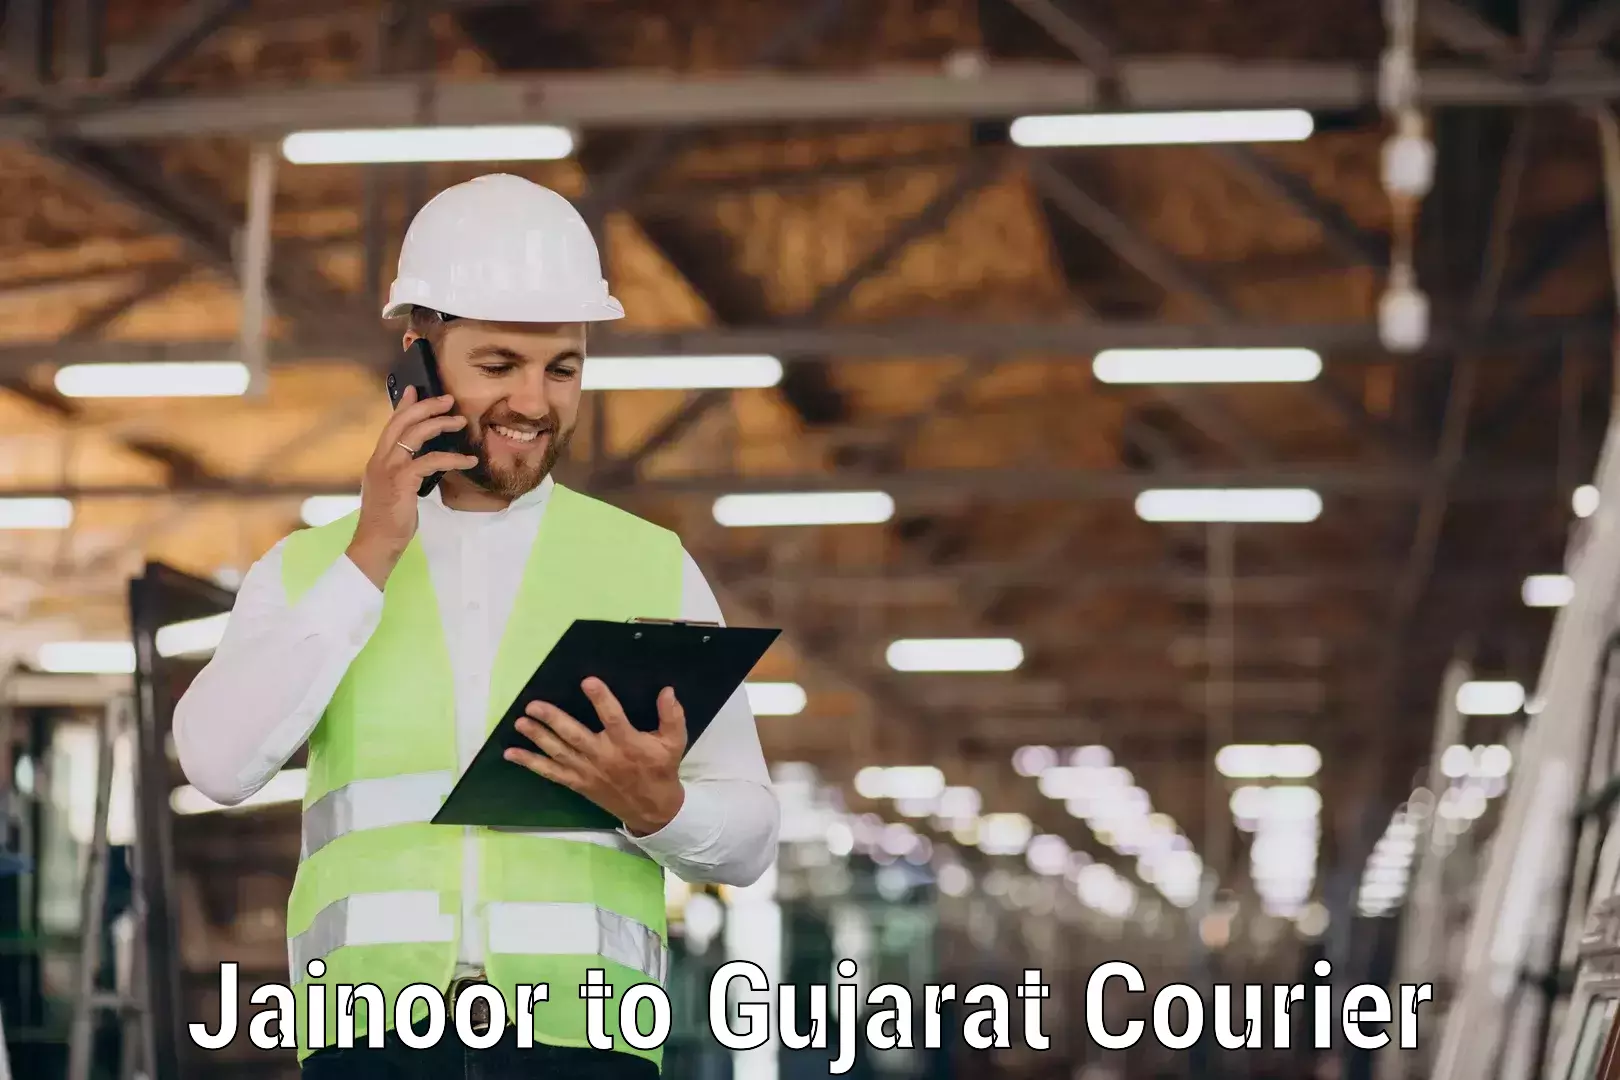 Innovative shipping solutions Jainoor to Gujarat